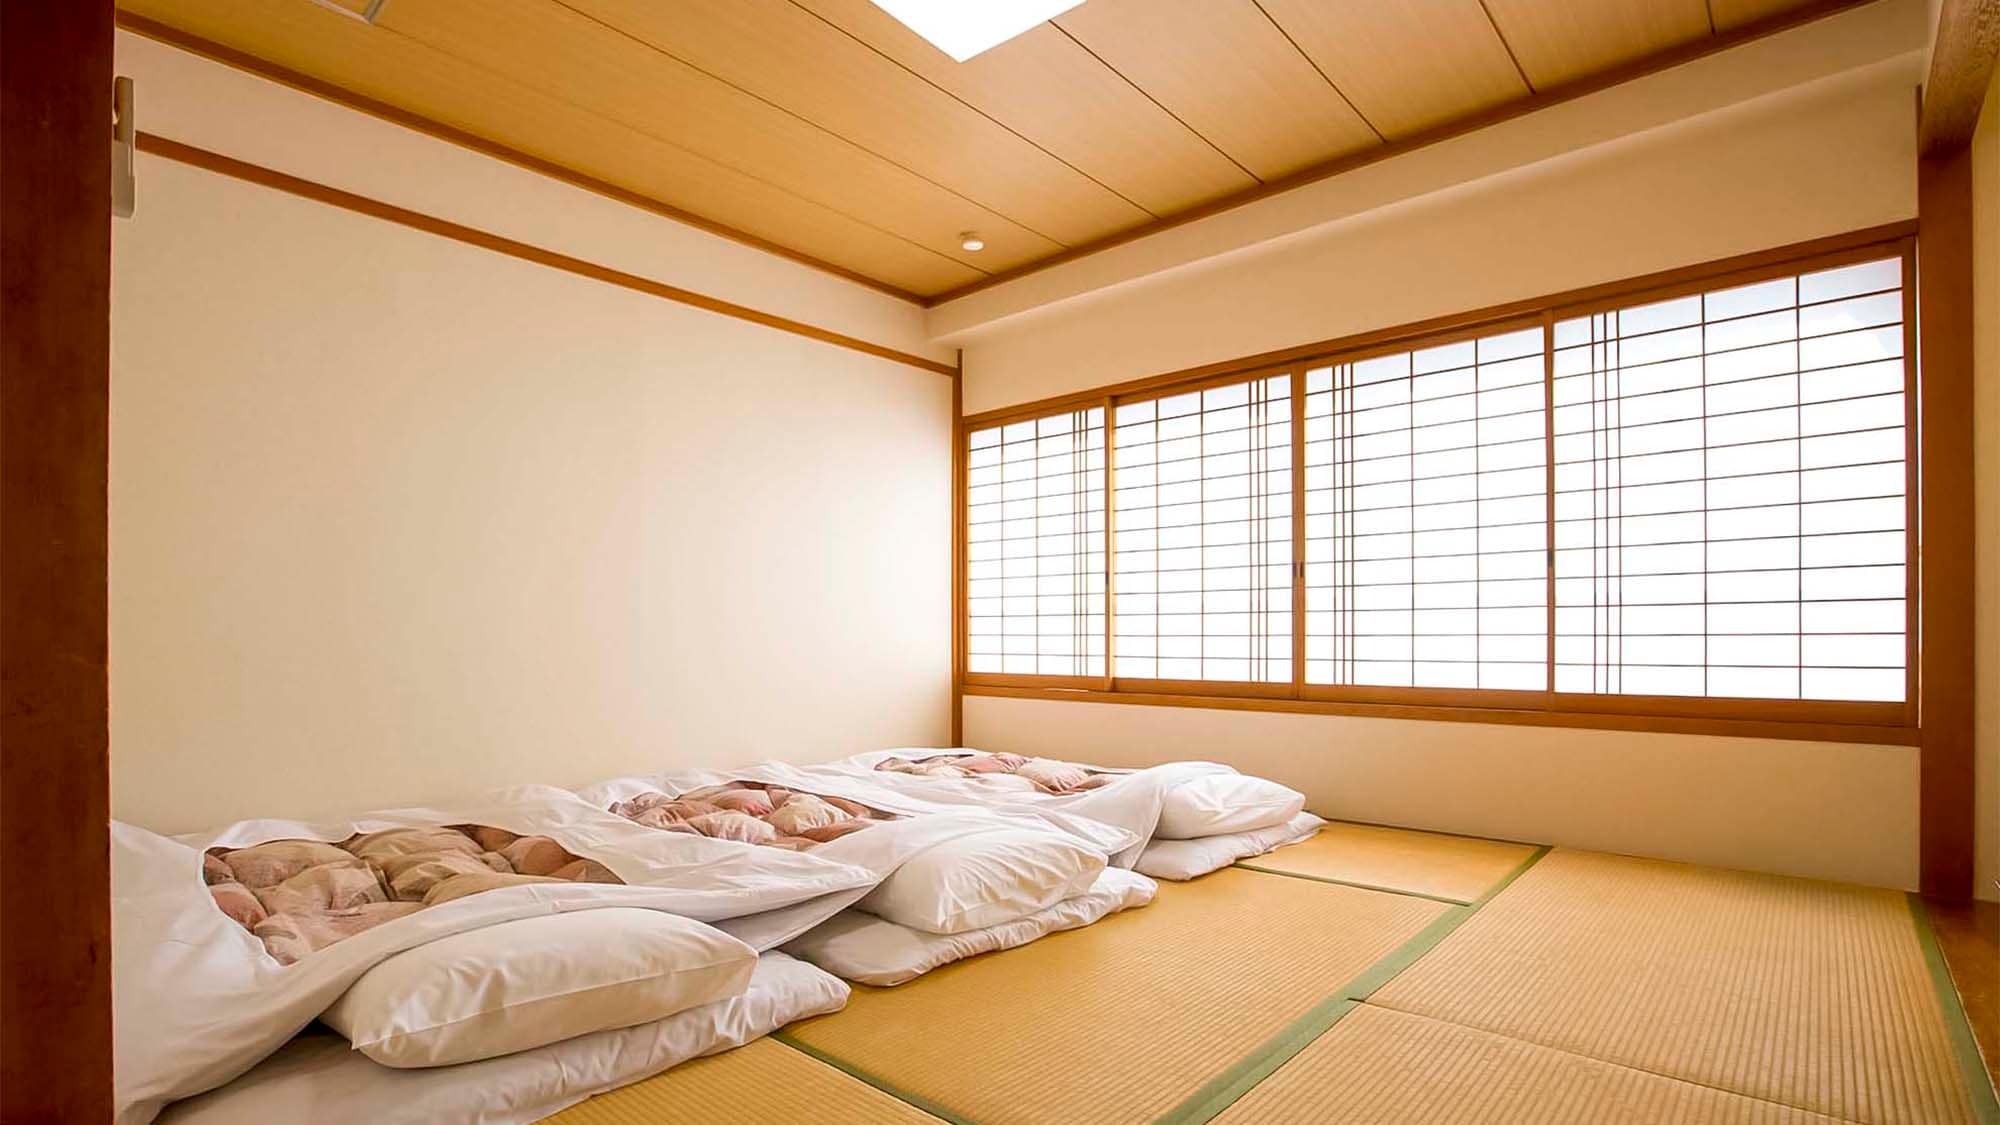 ・日式房间的例子：在宽敞的榻榻米上放松